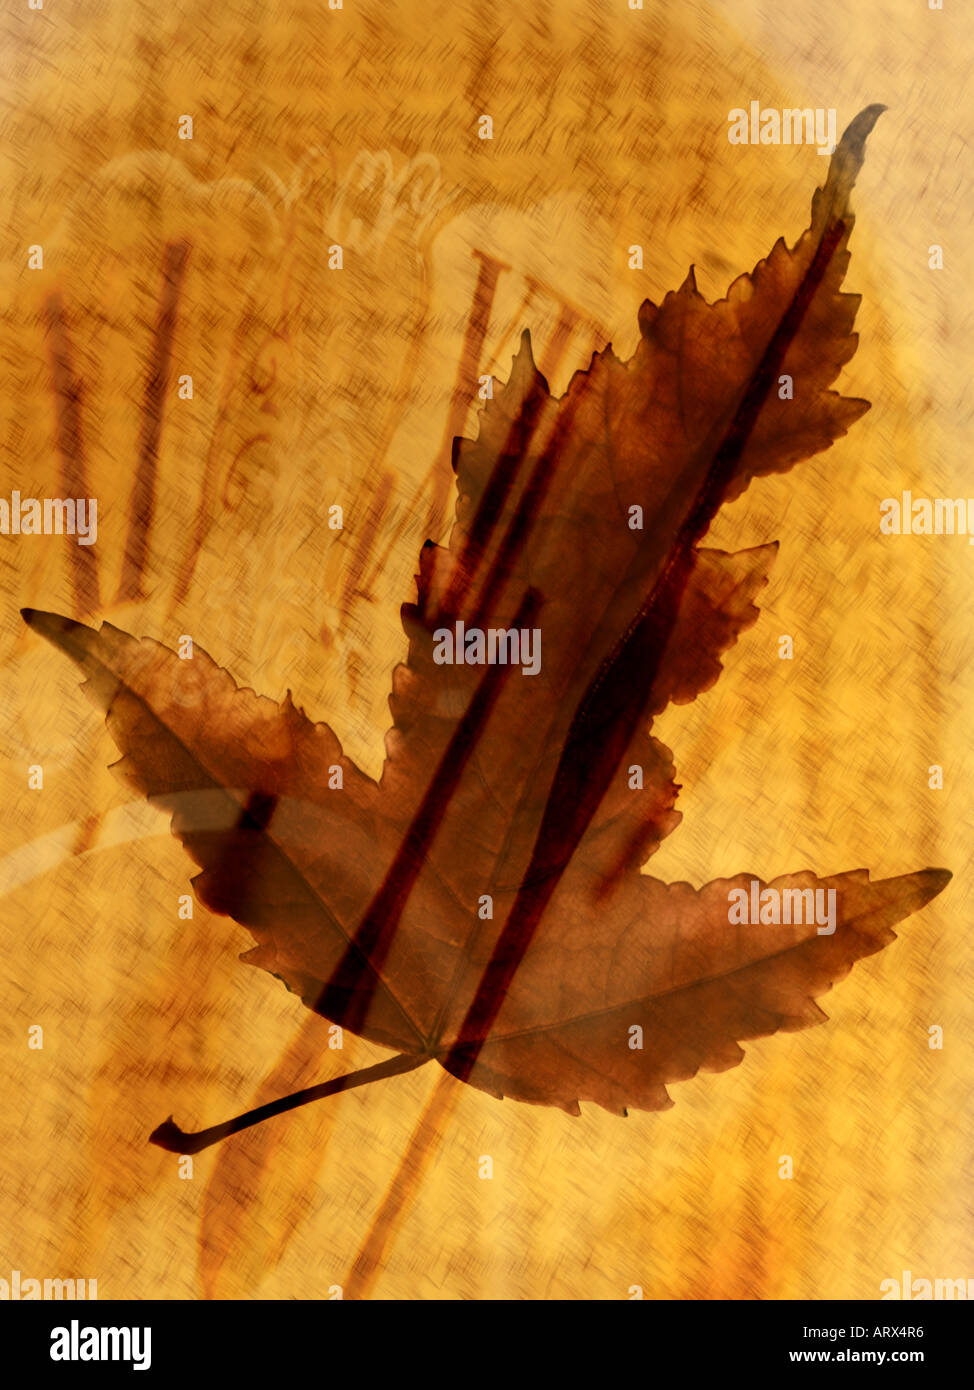 Digitalen zusammengesetztes Bild der Herbst Blatt und Uhr. Herbst, saisonale Veränderungen, Durchgang von Time-Konzepte. Stockfoto